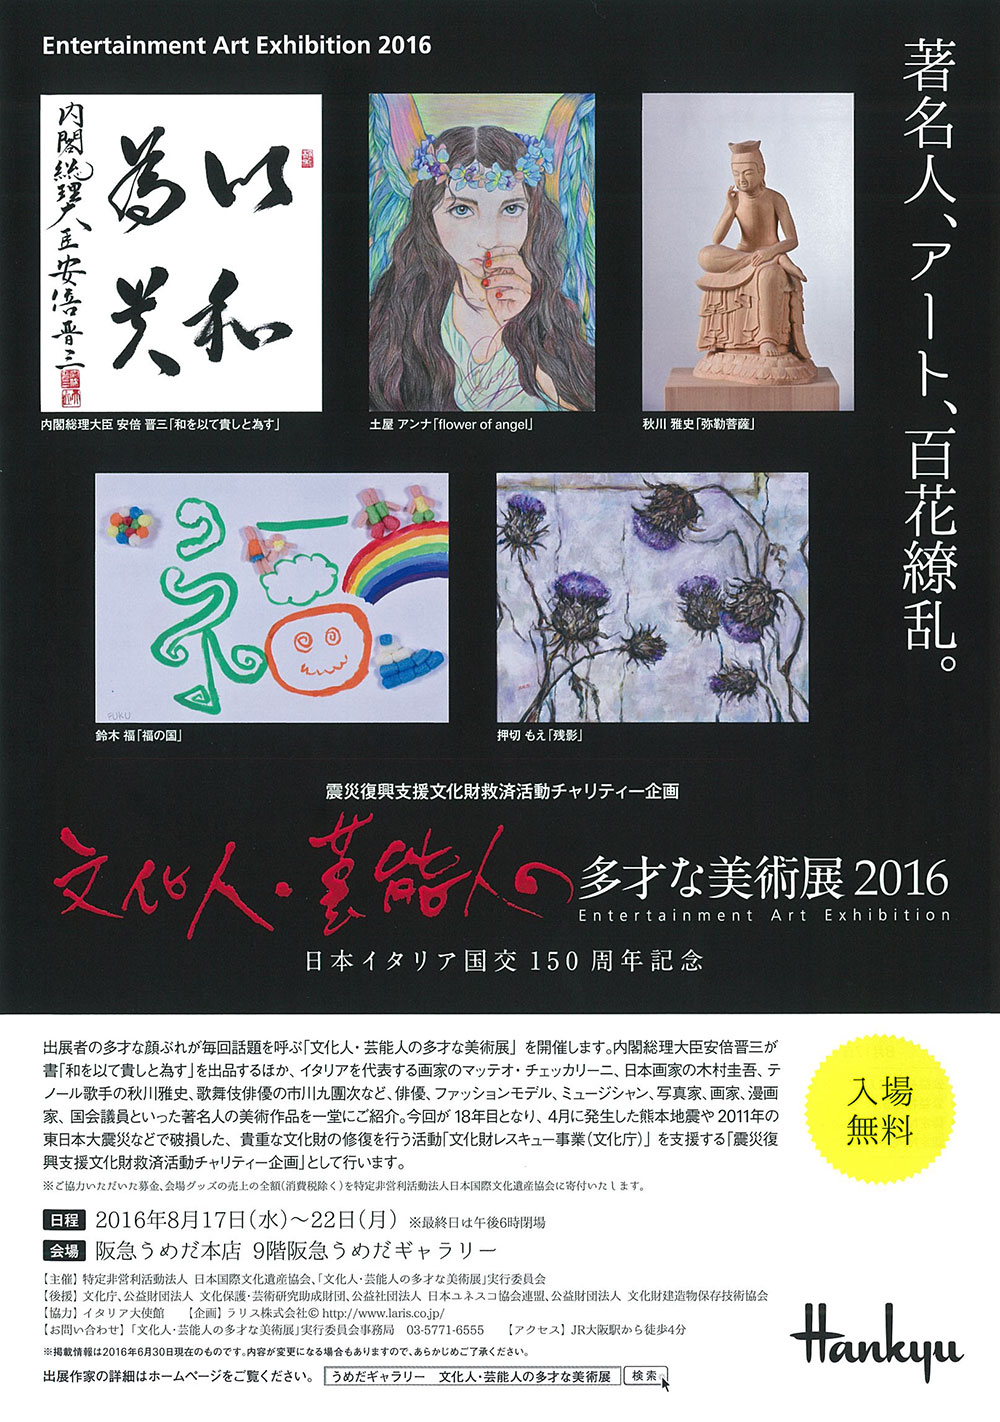 ラリス株式会社：『文化人・芸能人の多才な美術展 2016』の開催要項